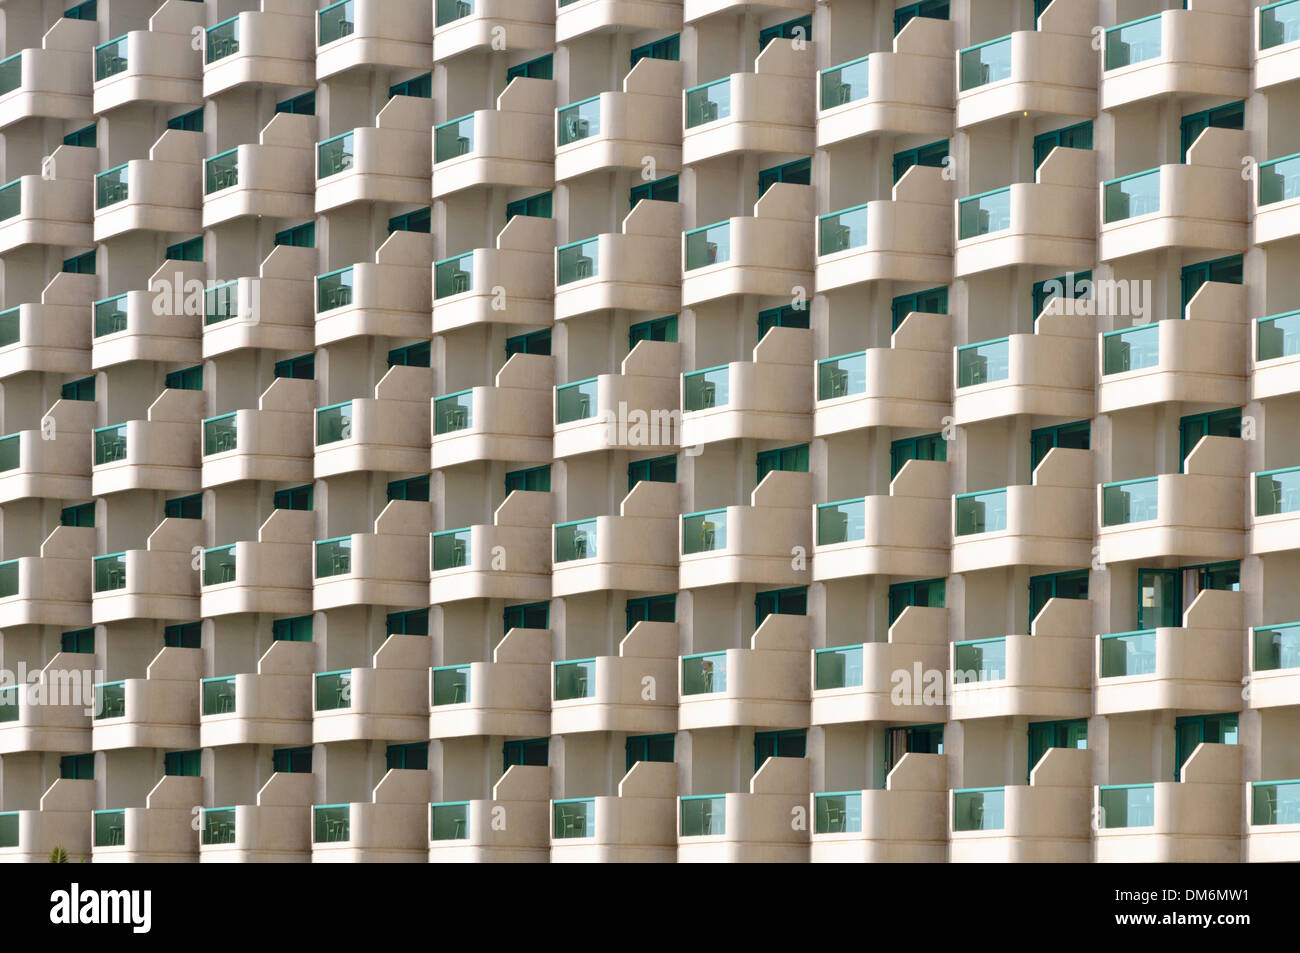 Face de l'hôtel Hilton, la plage de Jumeirah, DUBAÏ, ÉMIRATS ARABES UNIS, l'Arabian pensinsula Banque D'Images